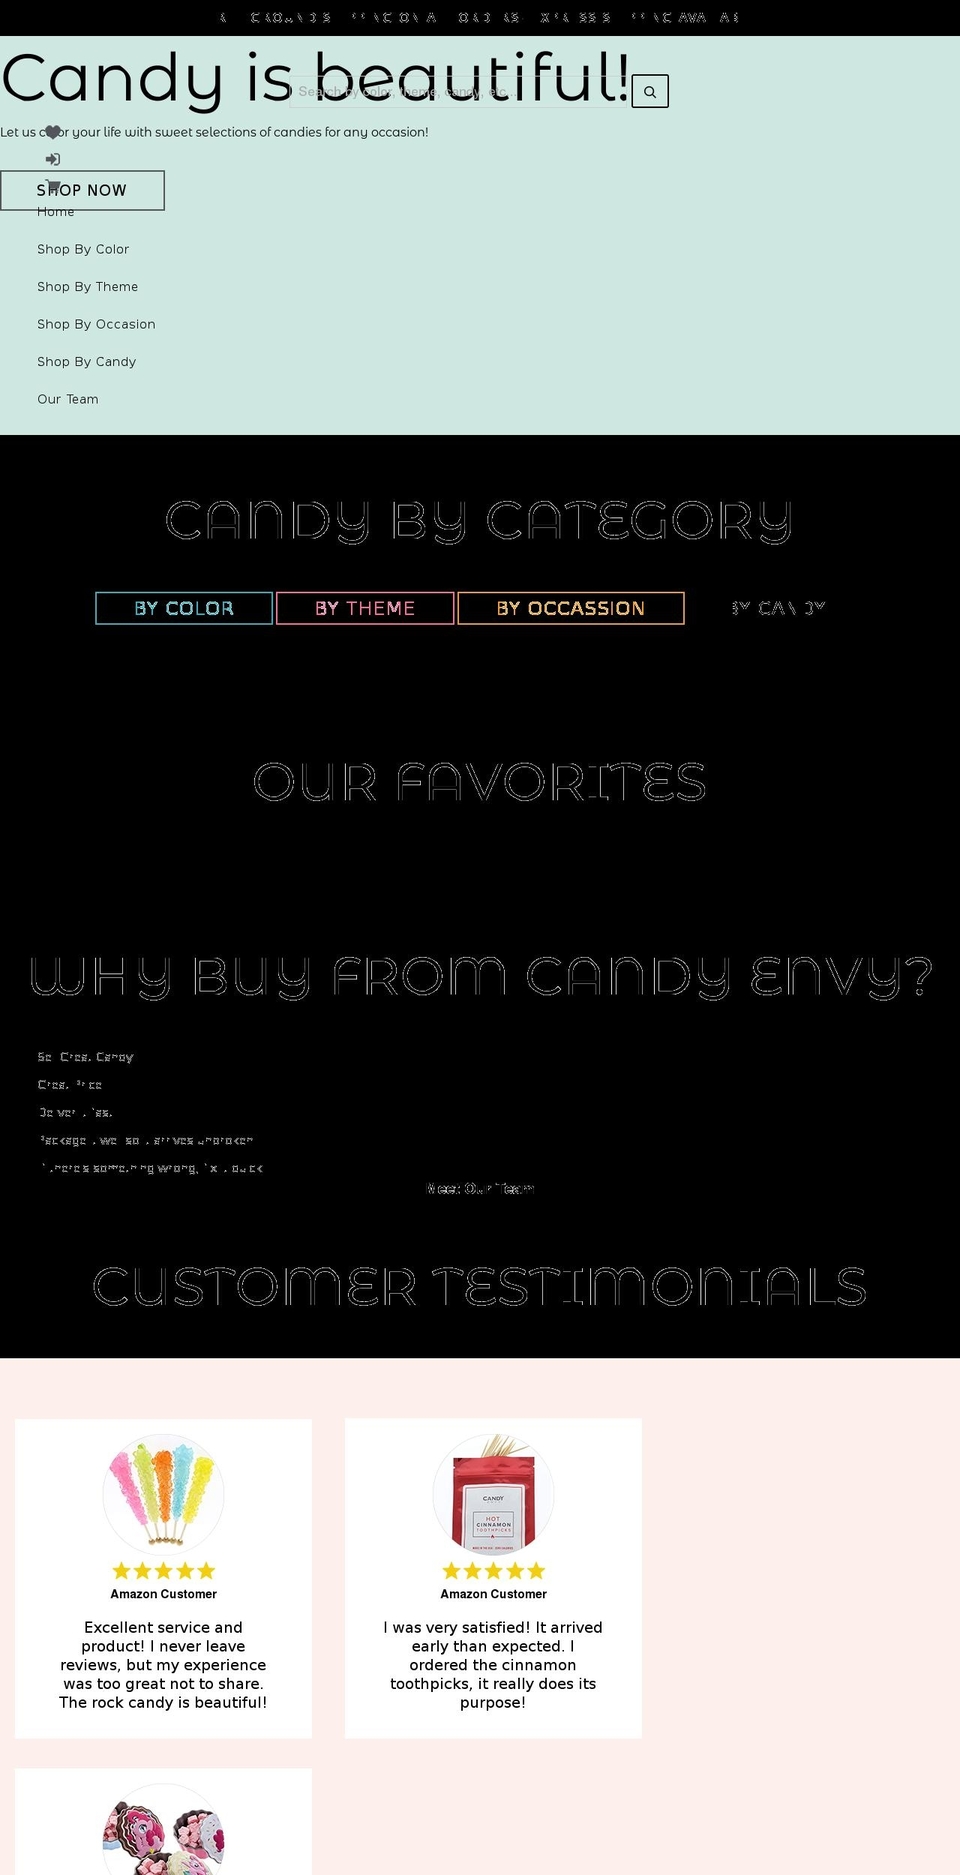 nexgeek Shopify theme site example candyenvy.com